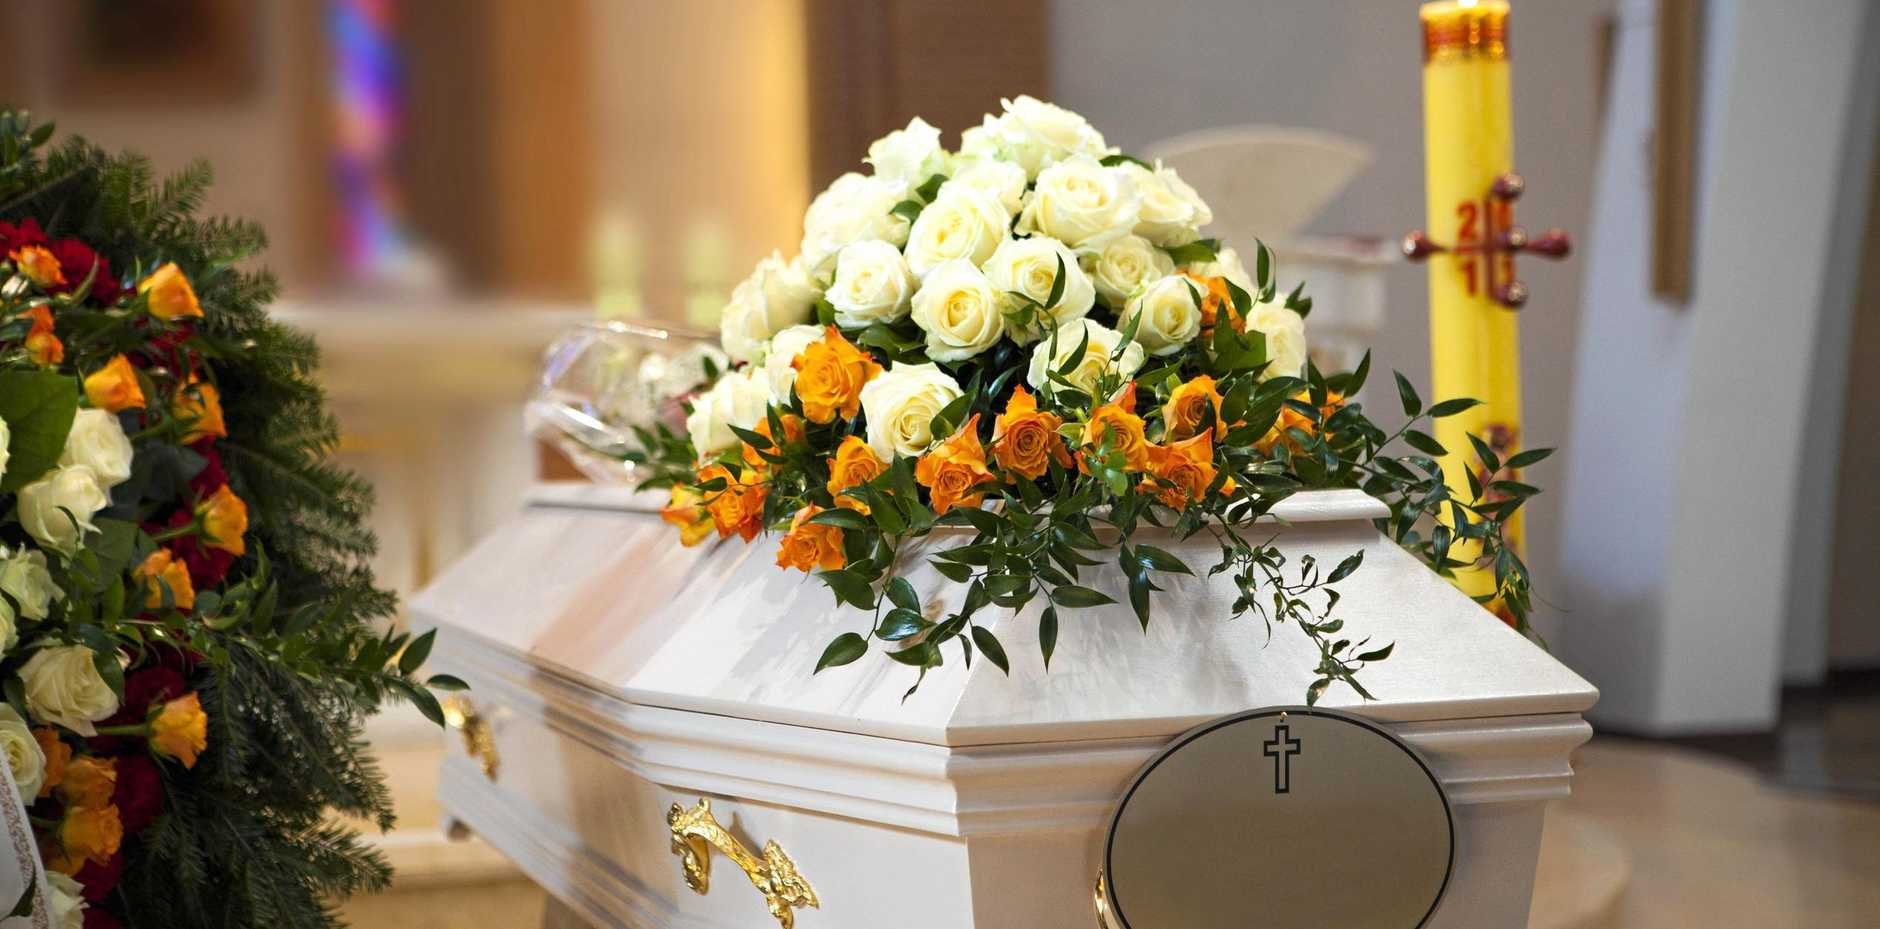 Funeral Directors Adelaide